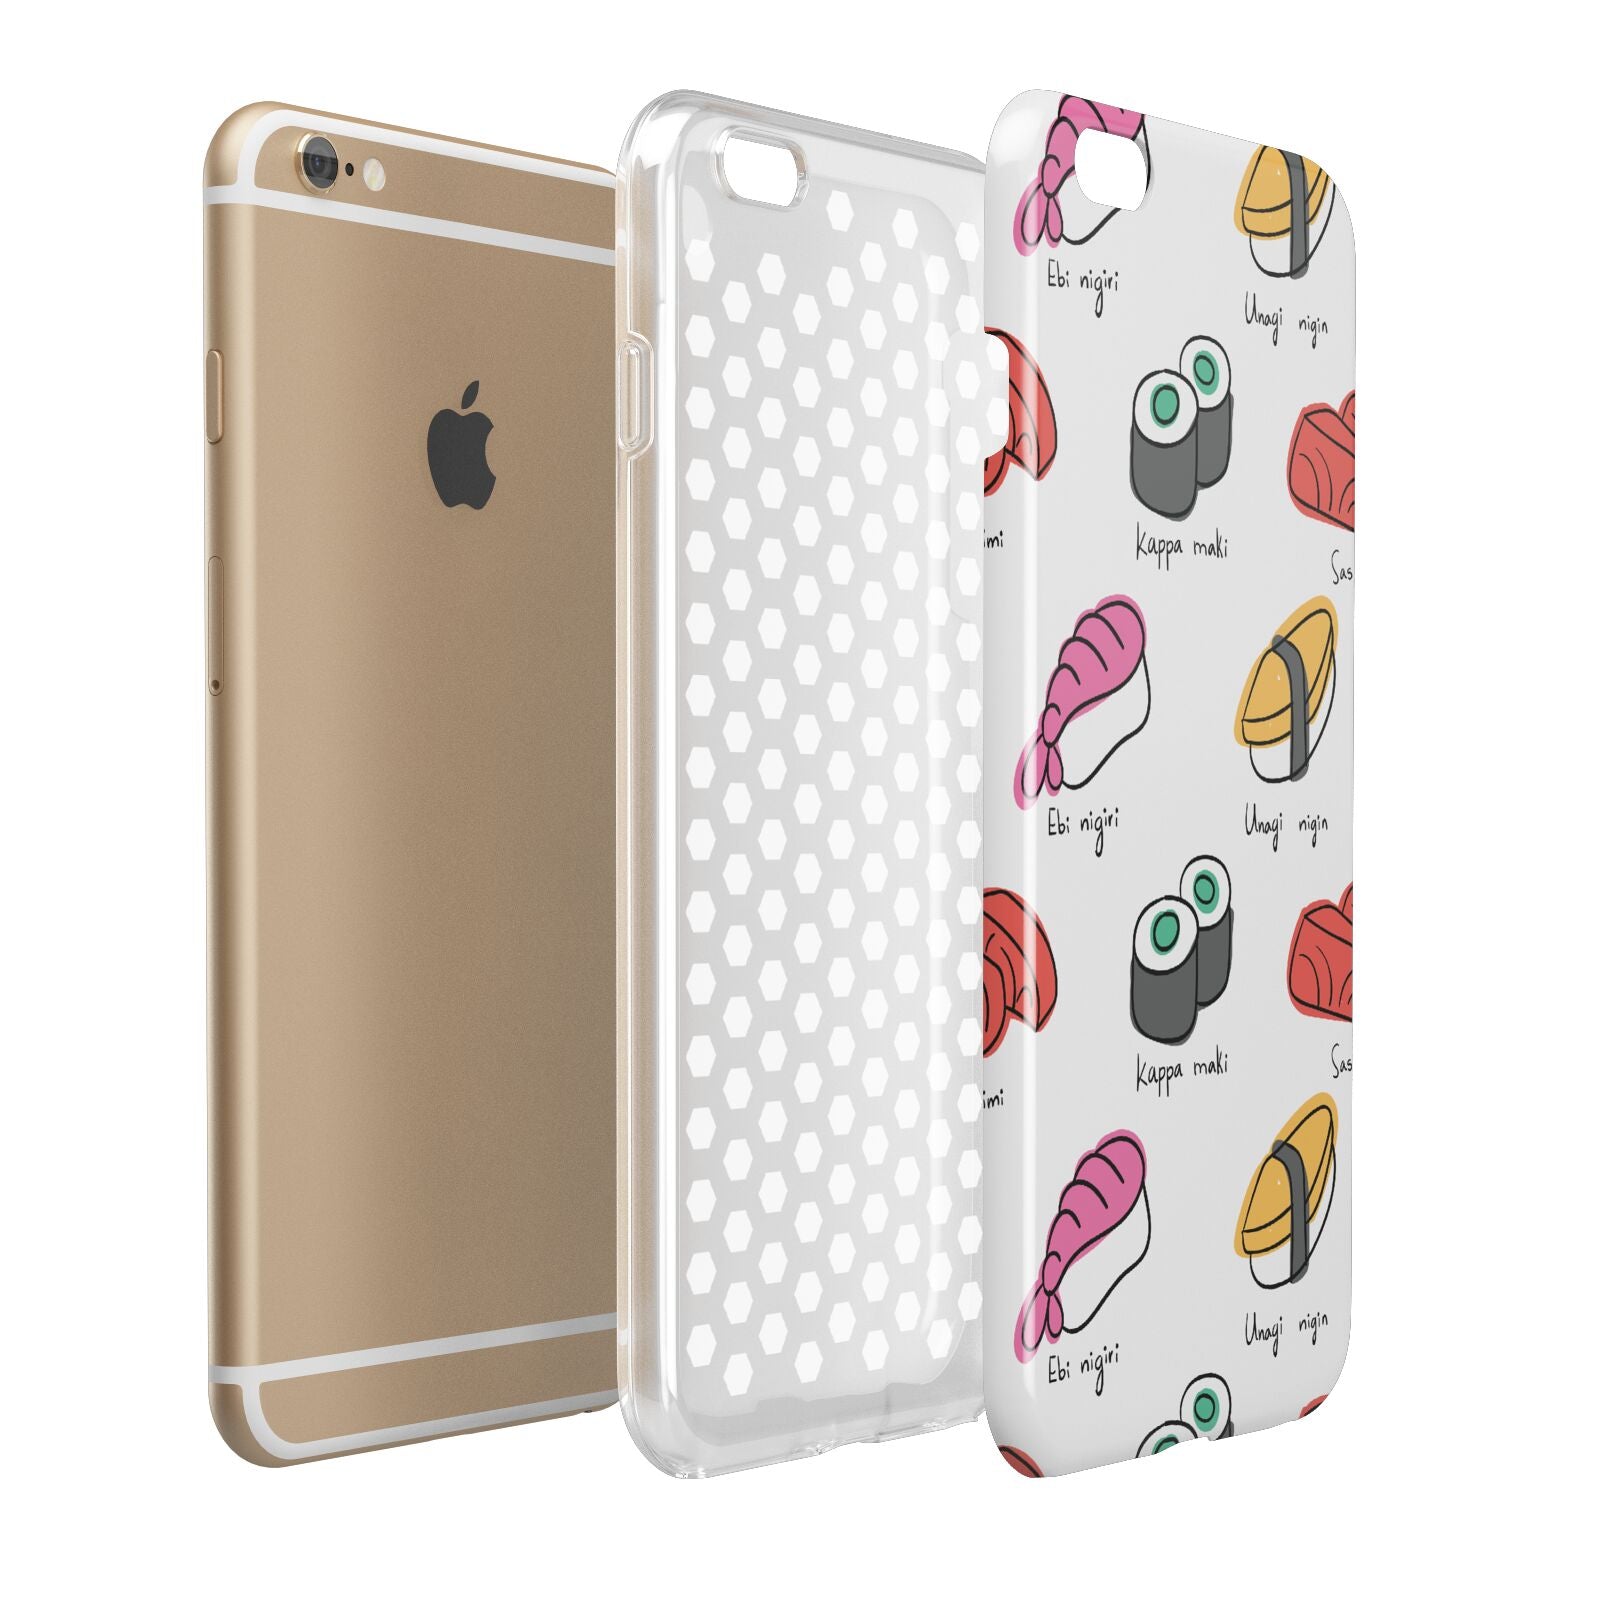 Sashimi Kappa Maki Sushi Apple iPhone 6 Plus 3D Tough Case Expand Detail Image